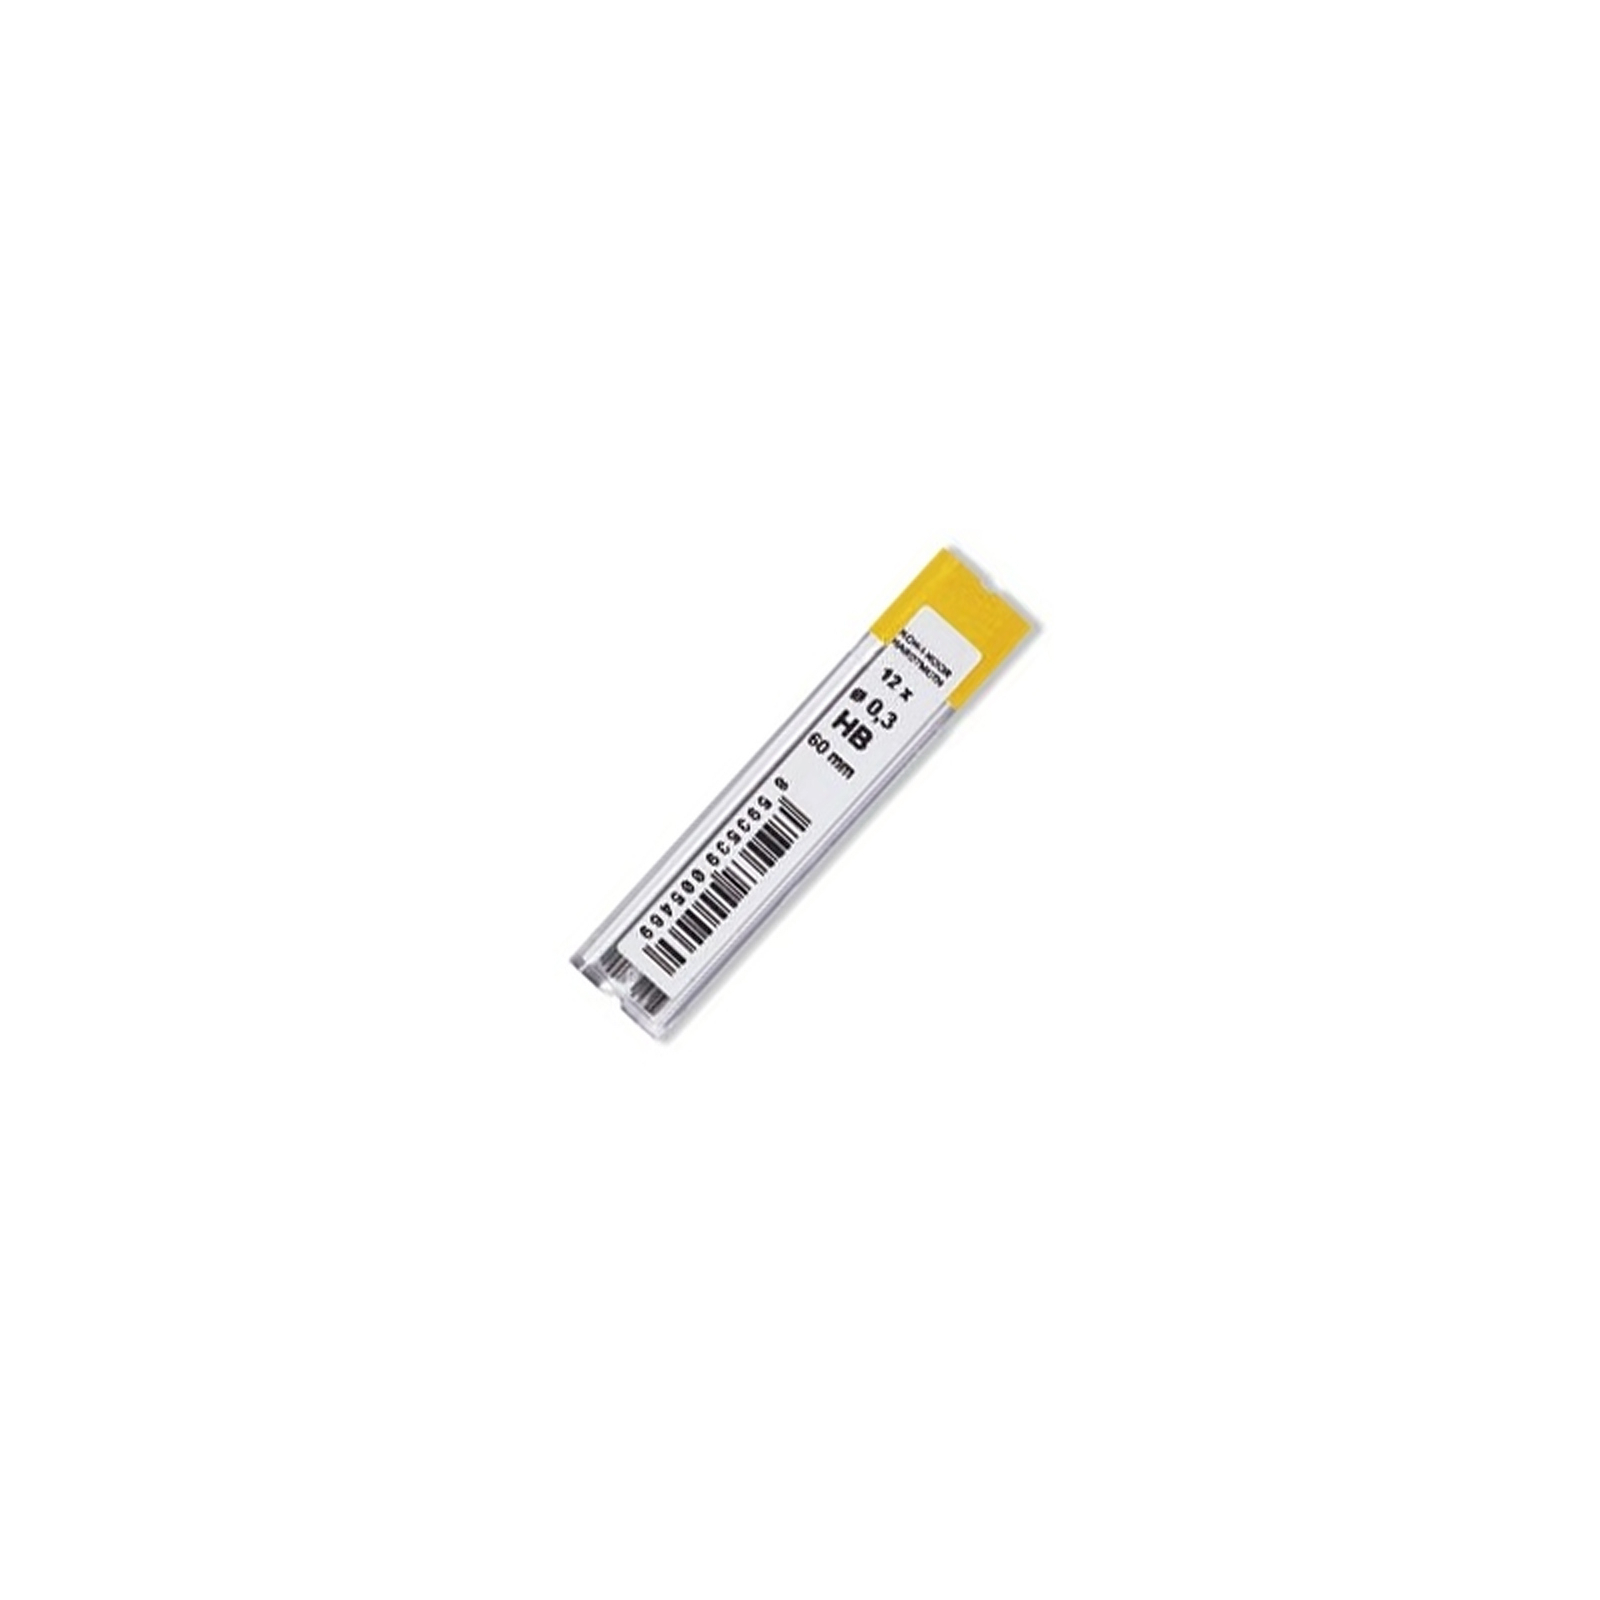 Грифель для механического карандаша Koh-i-Noor 4132.HB, 0.3 мм, 12шт (41320HB006PK)